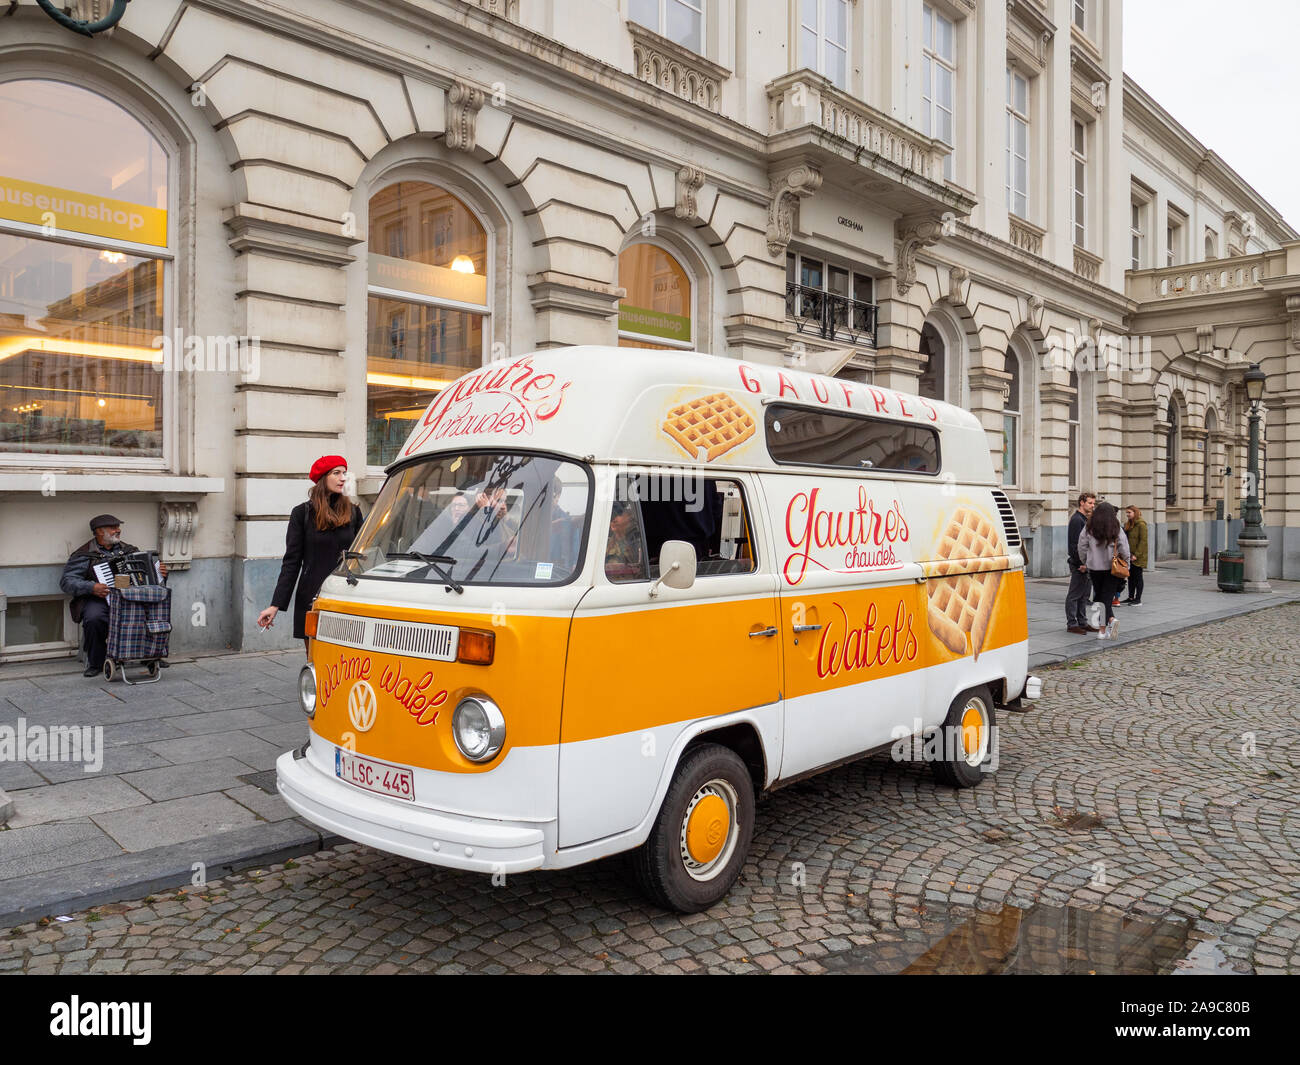 VW camper van selling Belgian waffles on the street, Brussels, Belgium Stock Photo